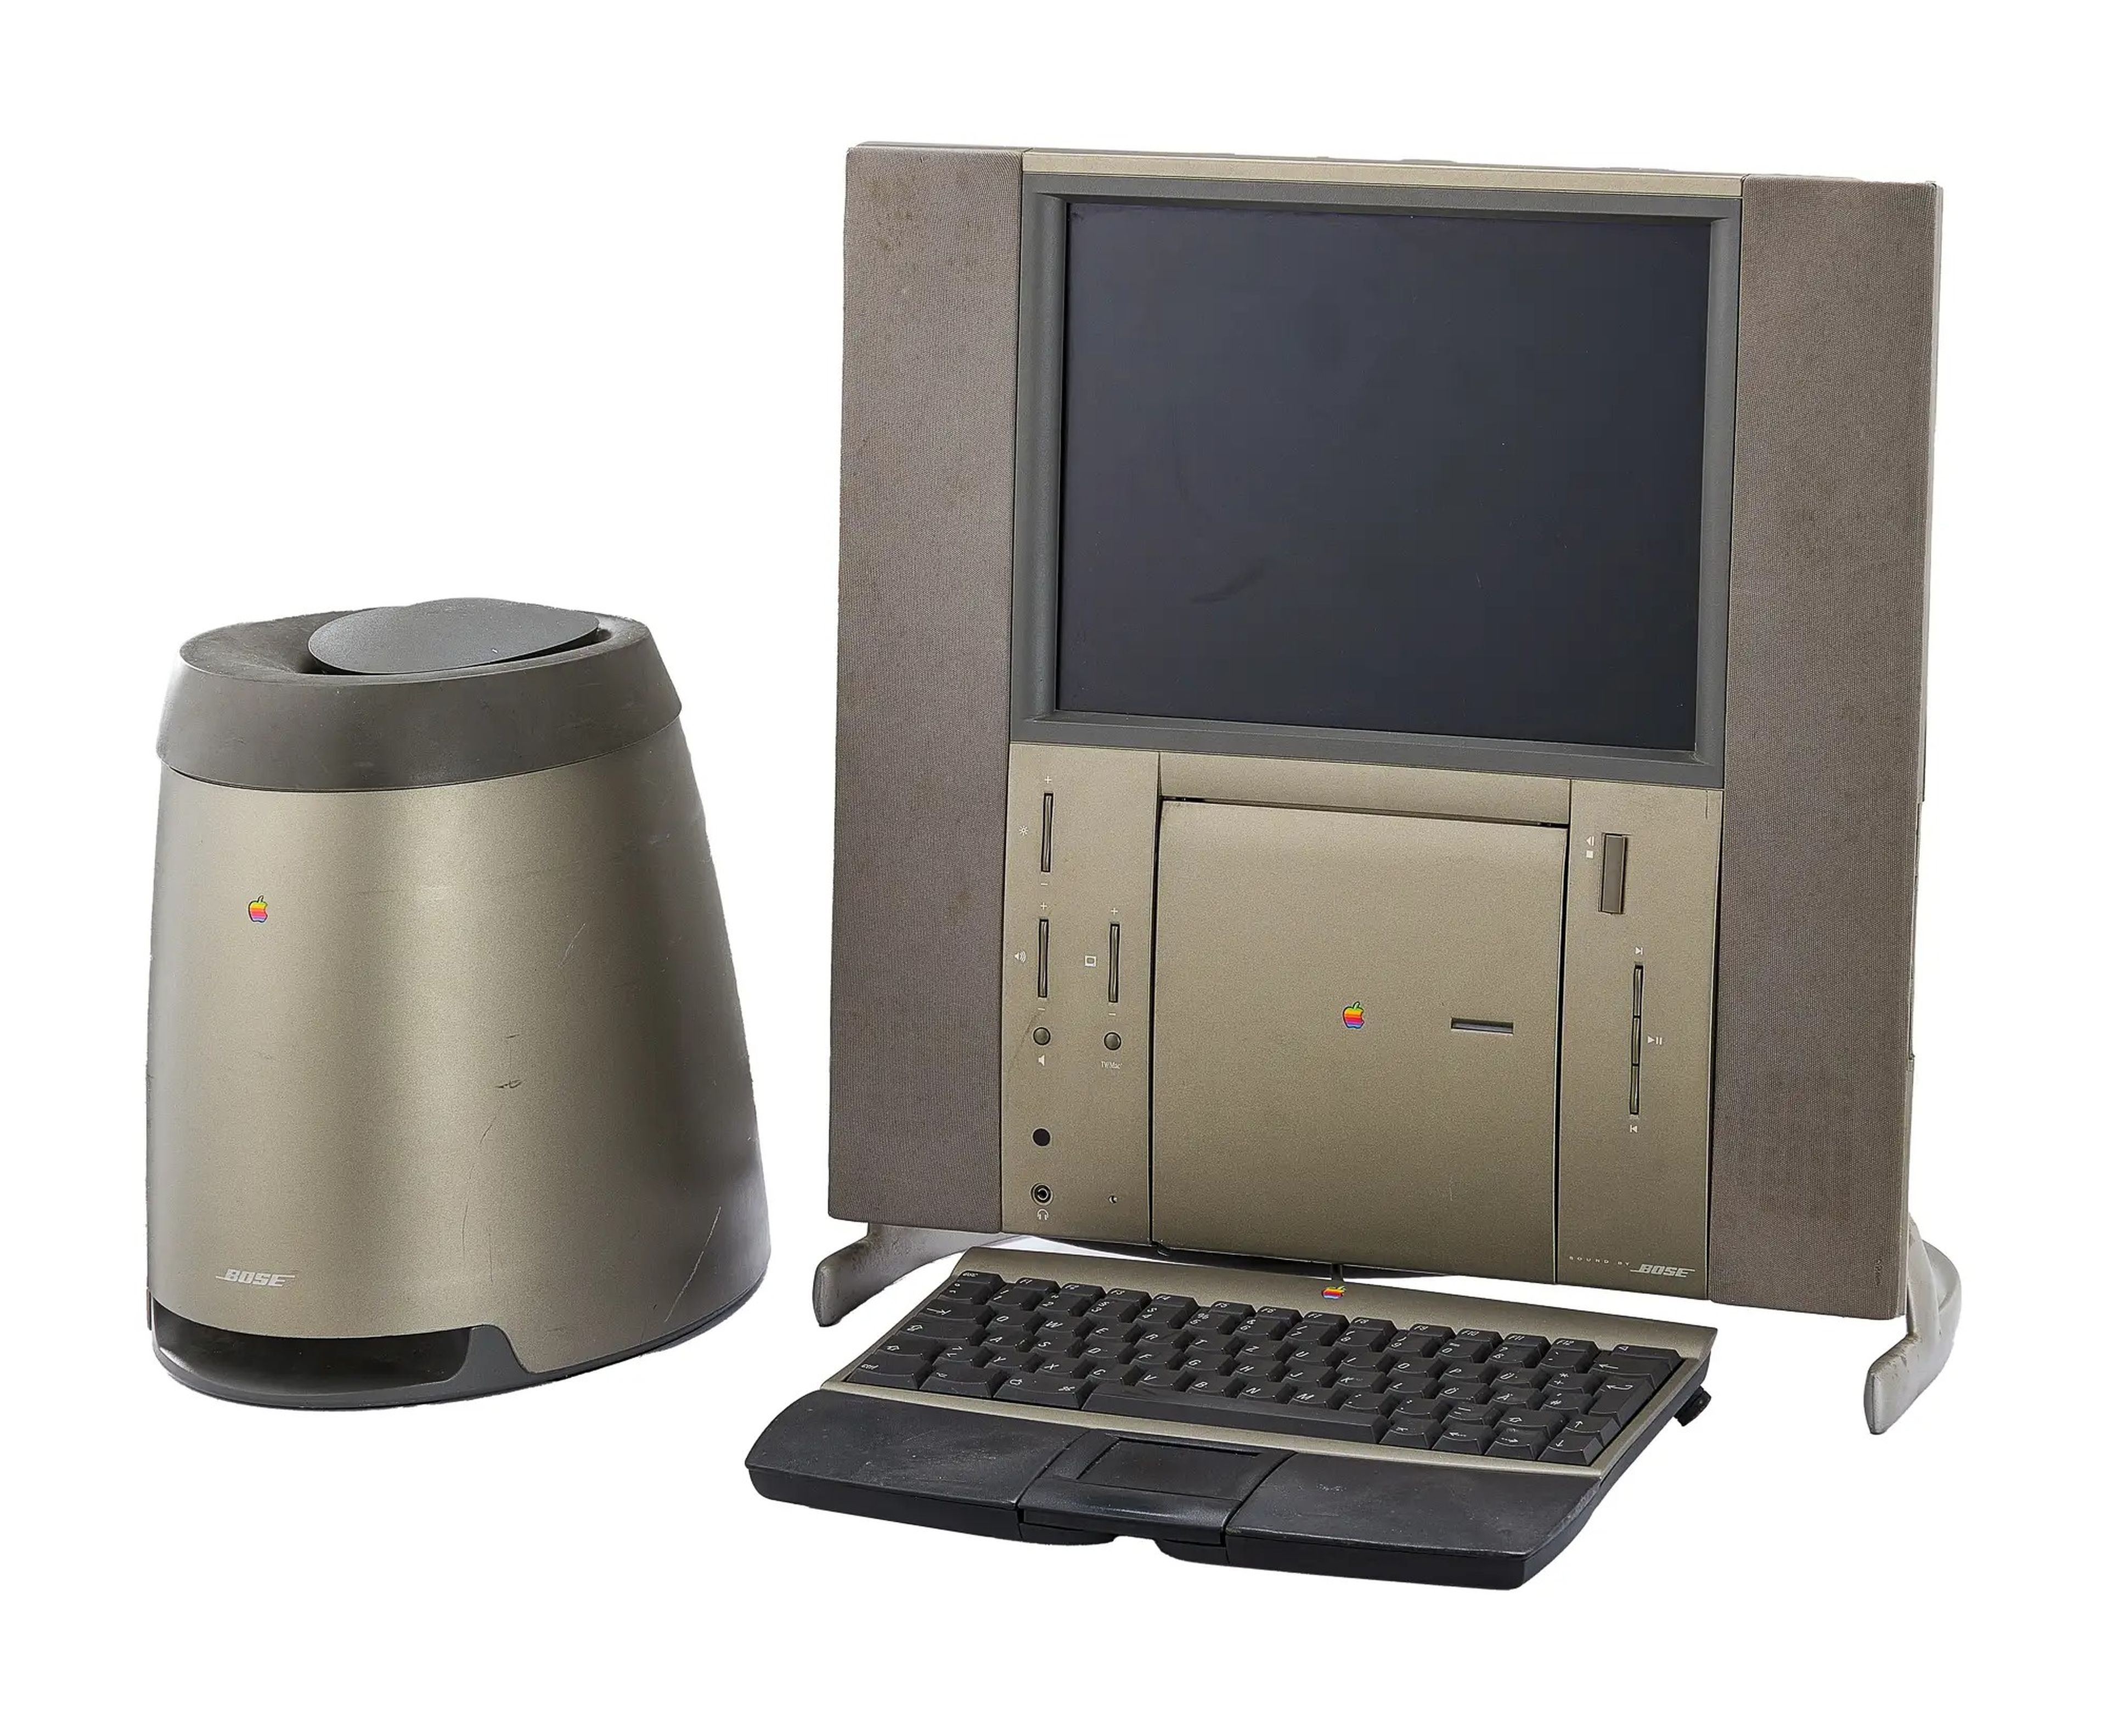 1997 Twentieth Anniversary Macintosh with a head unit, base unit keyboard, and remote control